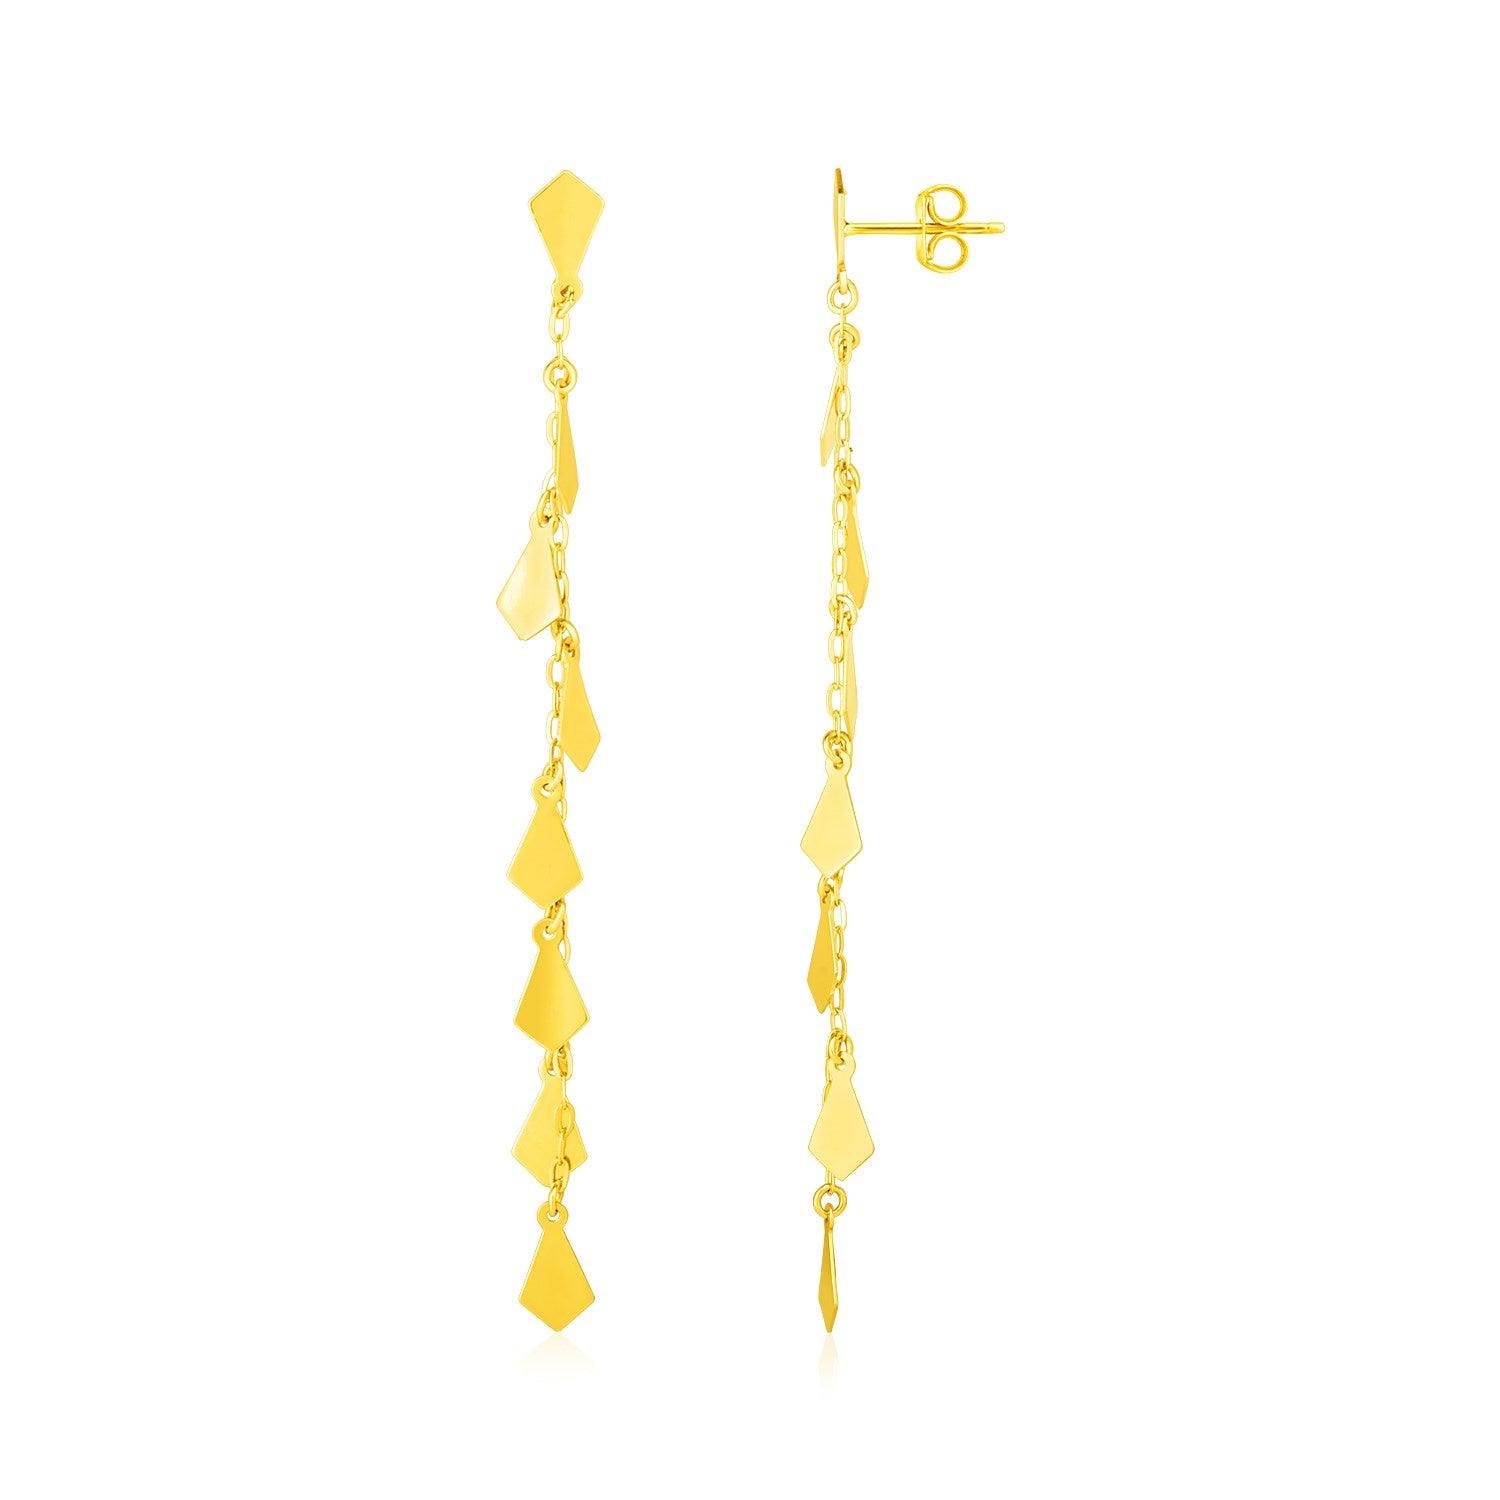 14K Yellow Gold Polished Diamond Motif Dangle Earrings freeshipping - Higher Class Elegance